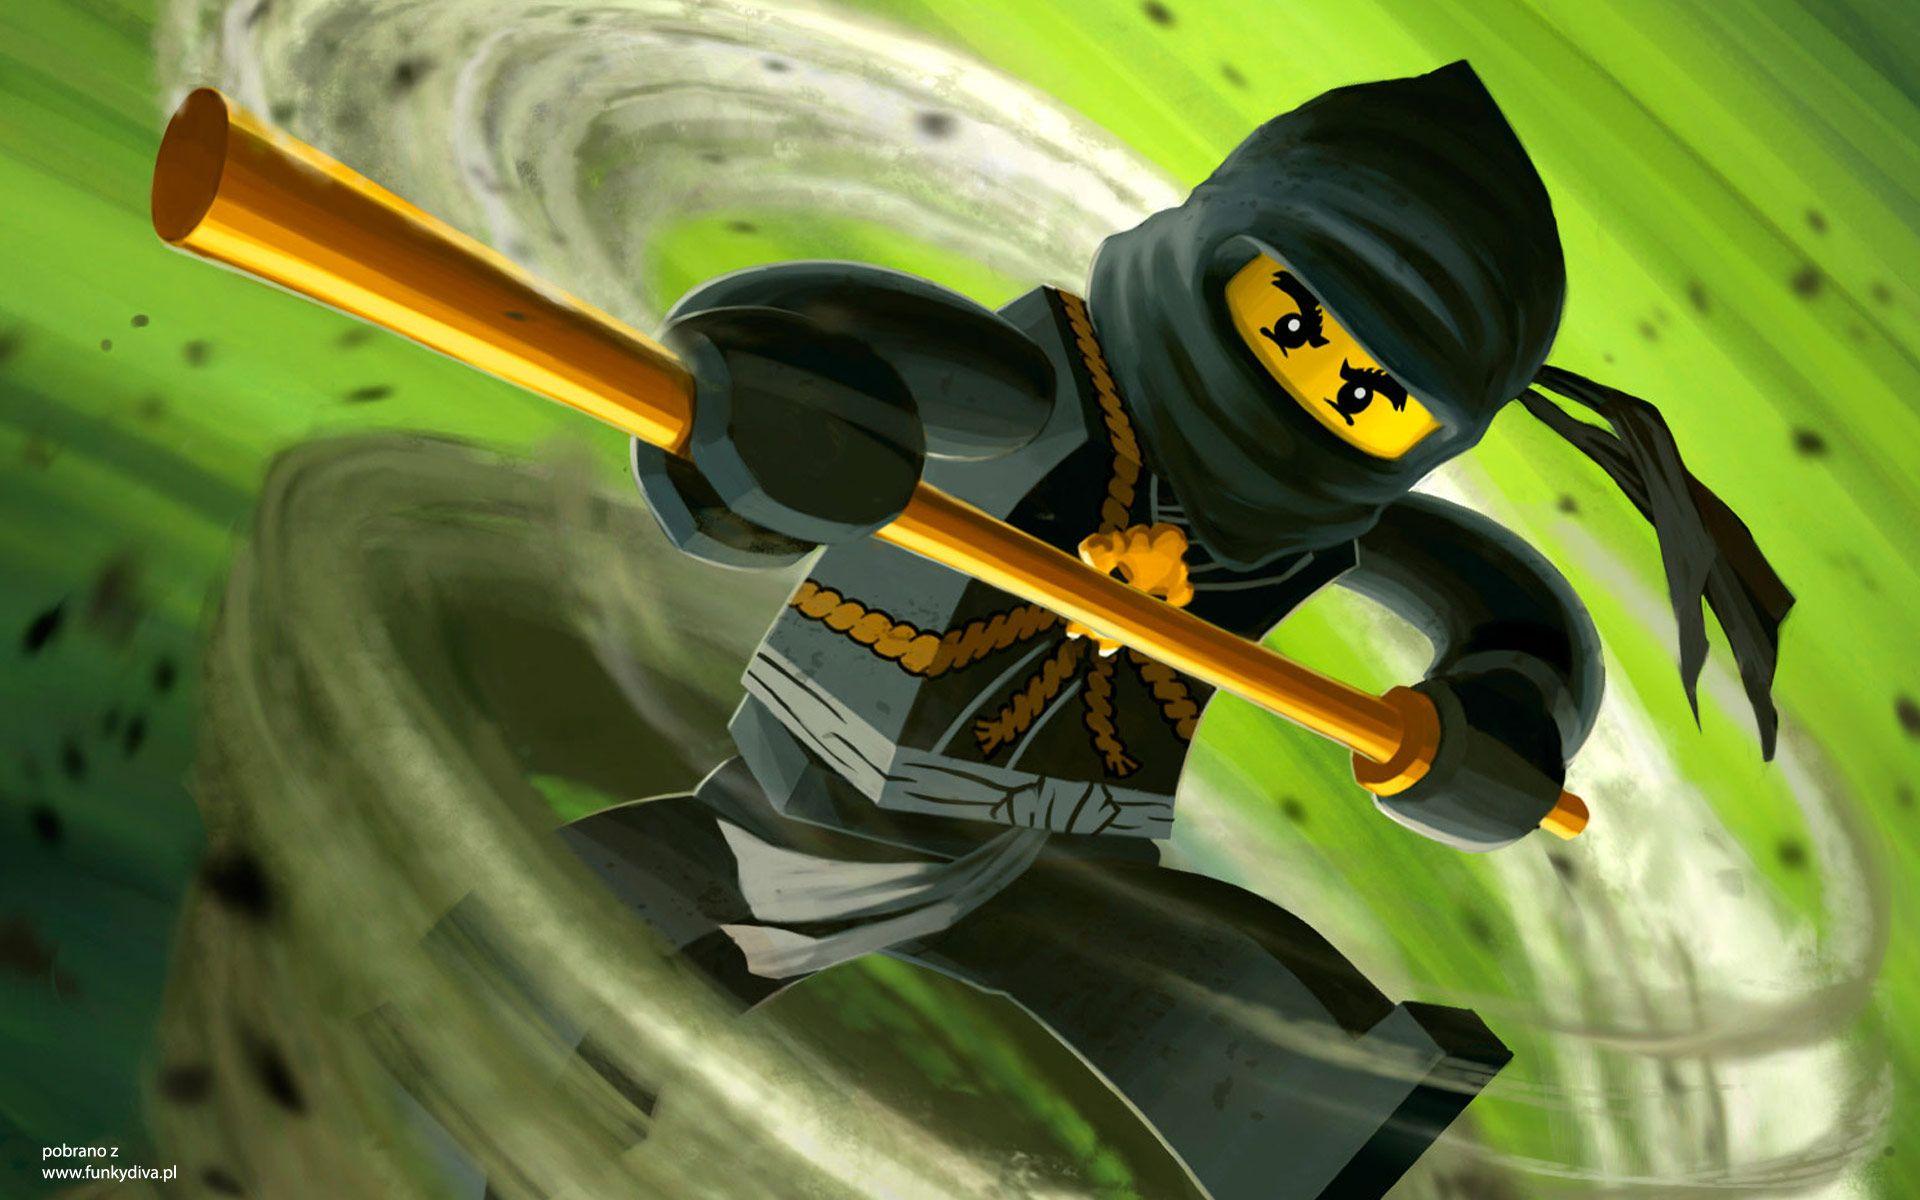 Hình ảnh Lego Ninjago 1920x1200 - Hình nền, Độ nét cao, Chất lượng cao